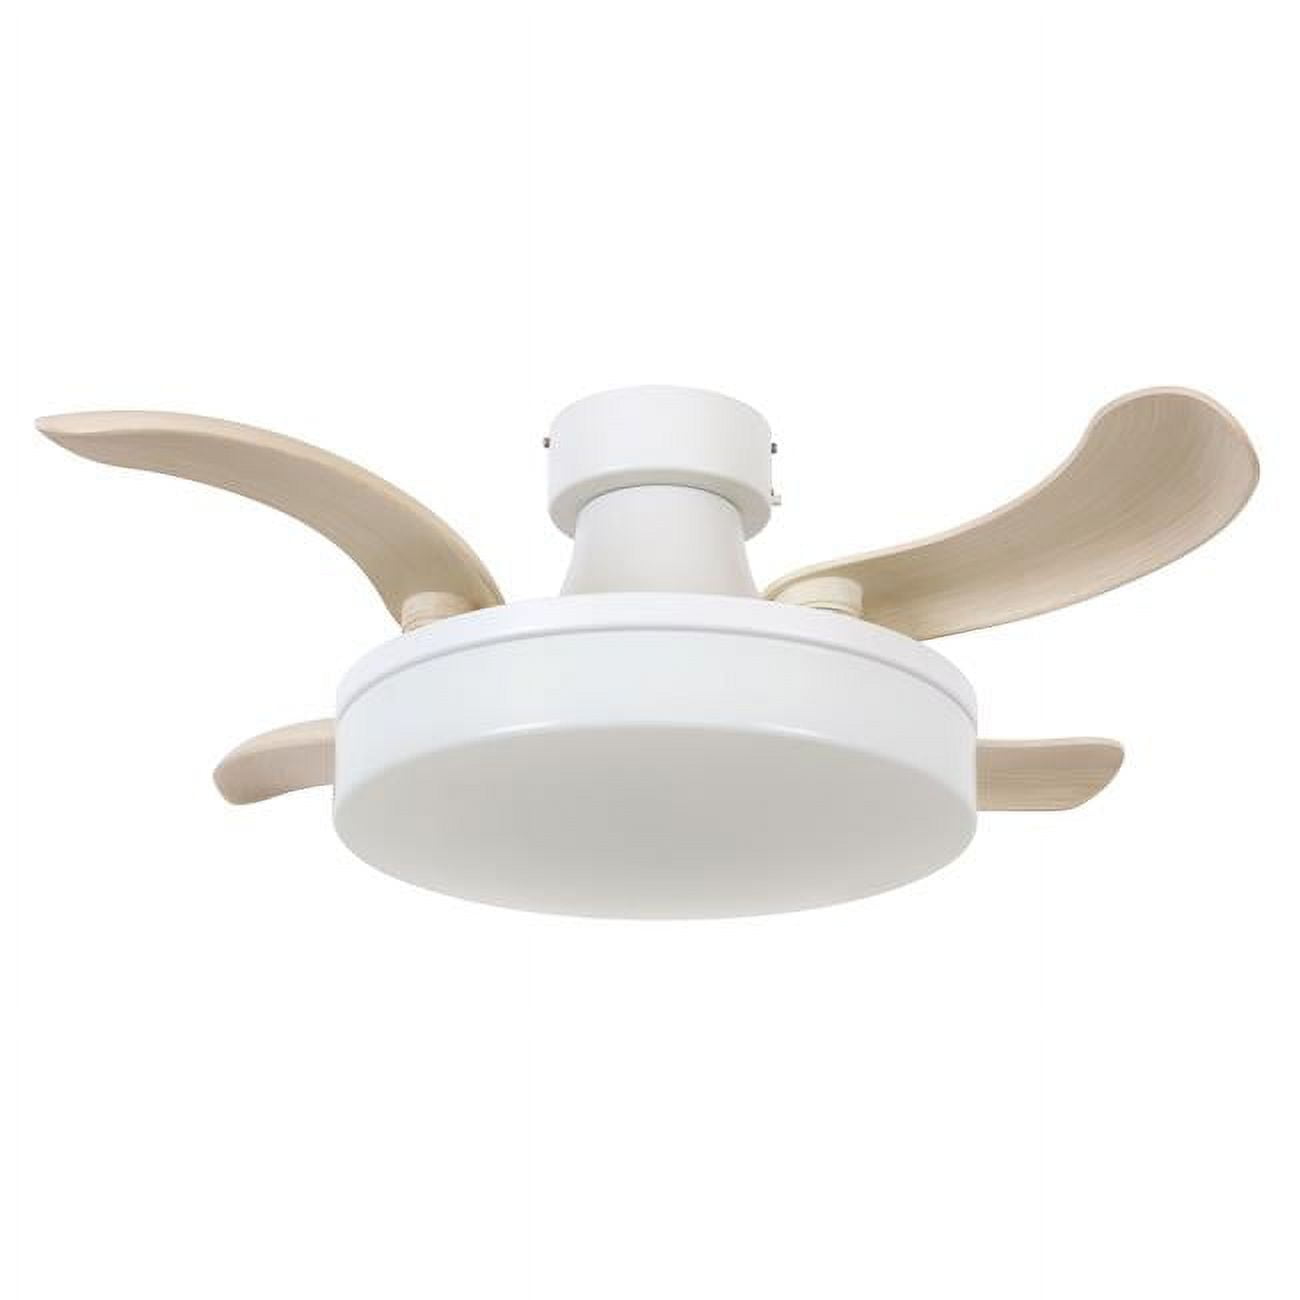 Picture of Fanaway 21066401 Fanaway Orbit 36-inch Matte White Ceiling Fan with Light